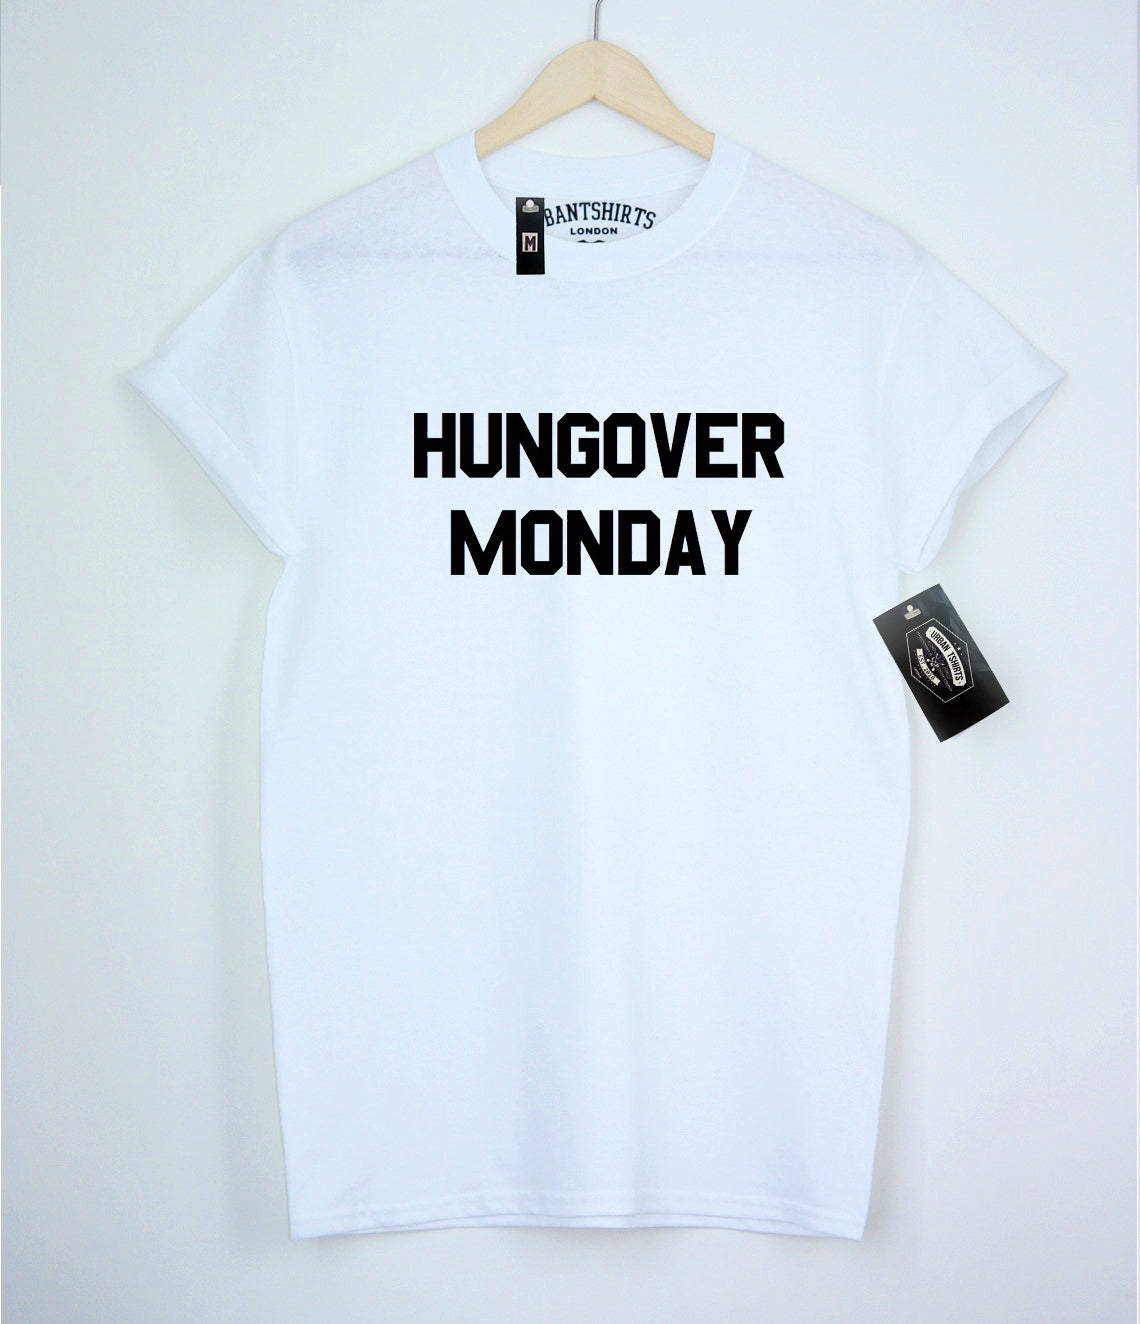 Hungover Monday T-shirt - Urbantshirts.co.uk